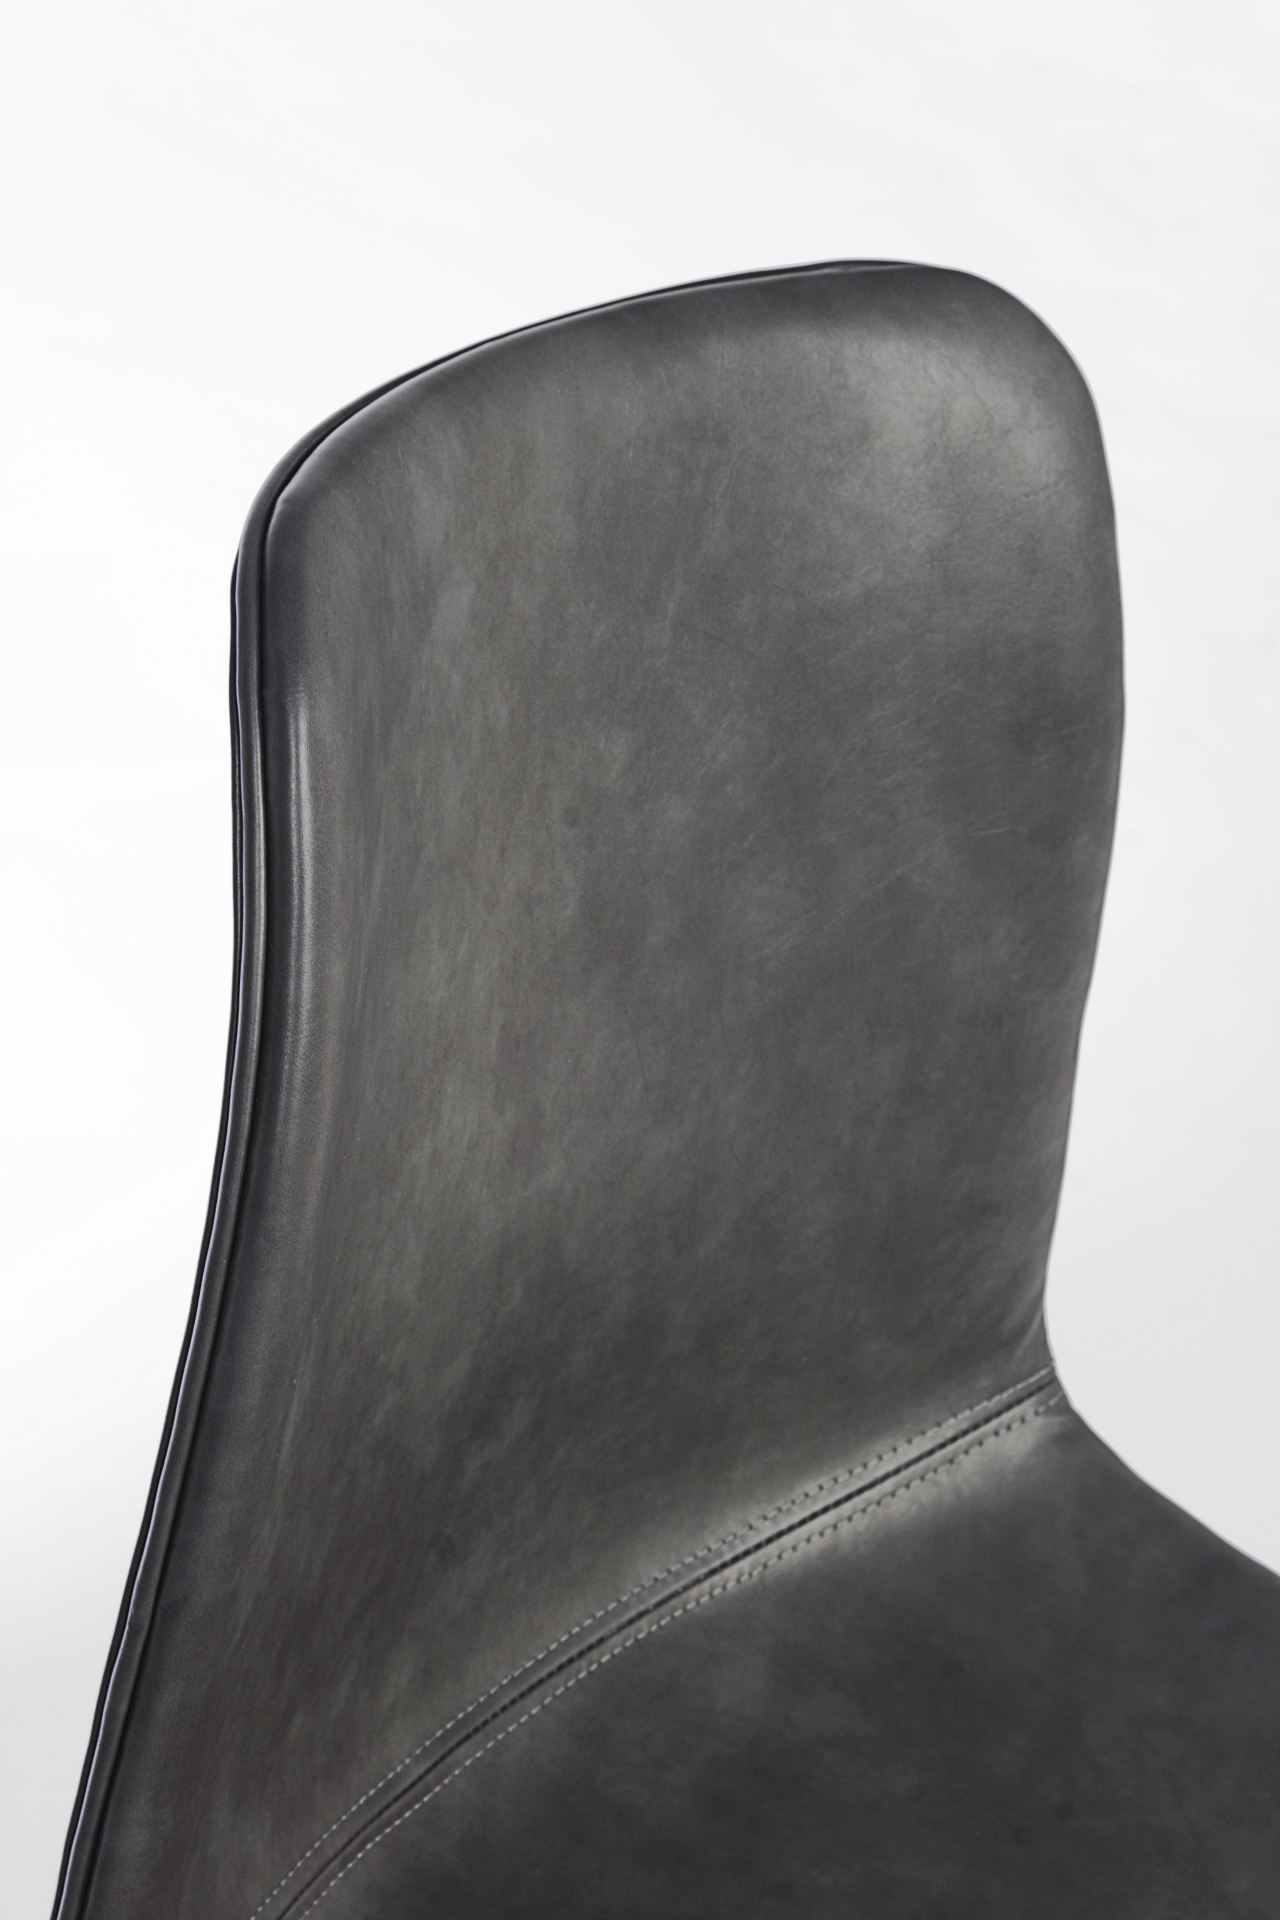 Der Esszimmerstuhl Kyra überzeugt mit seinem modernen Design. Gefertigt wurde der Stuhl aus Kunstleder, welcher einen Anthrazit Farbton besitzt. Das Gestell ist aus Metall und ist Schwarz. Die Sitzhöhe beträgt 44 cm.